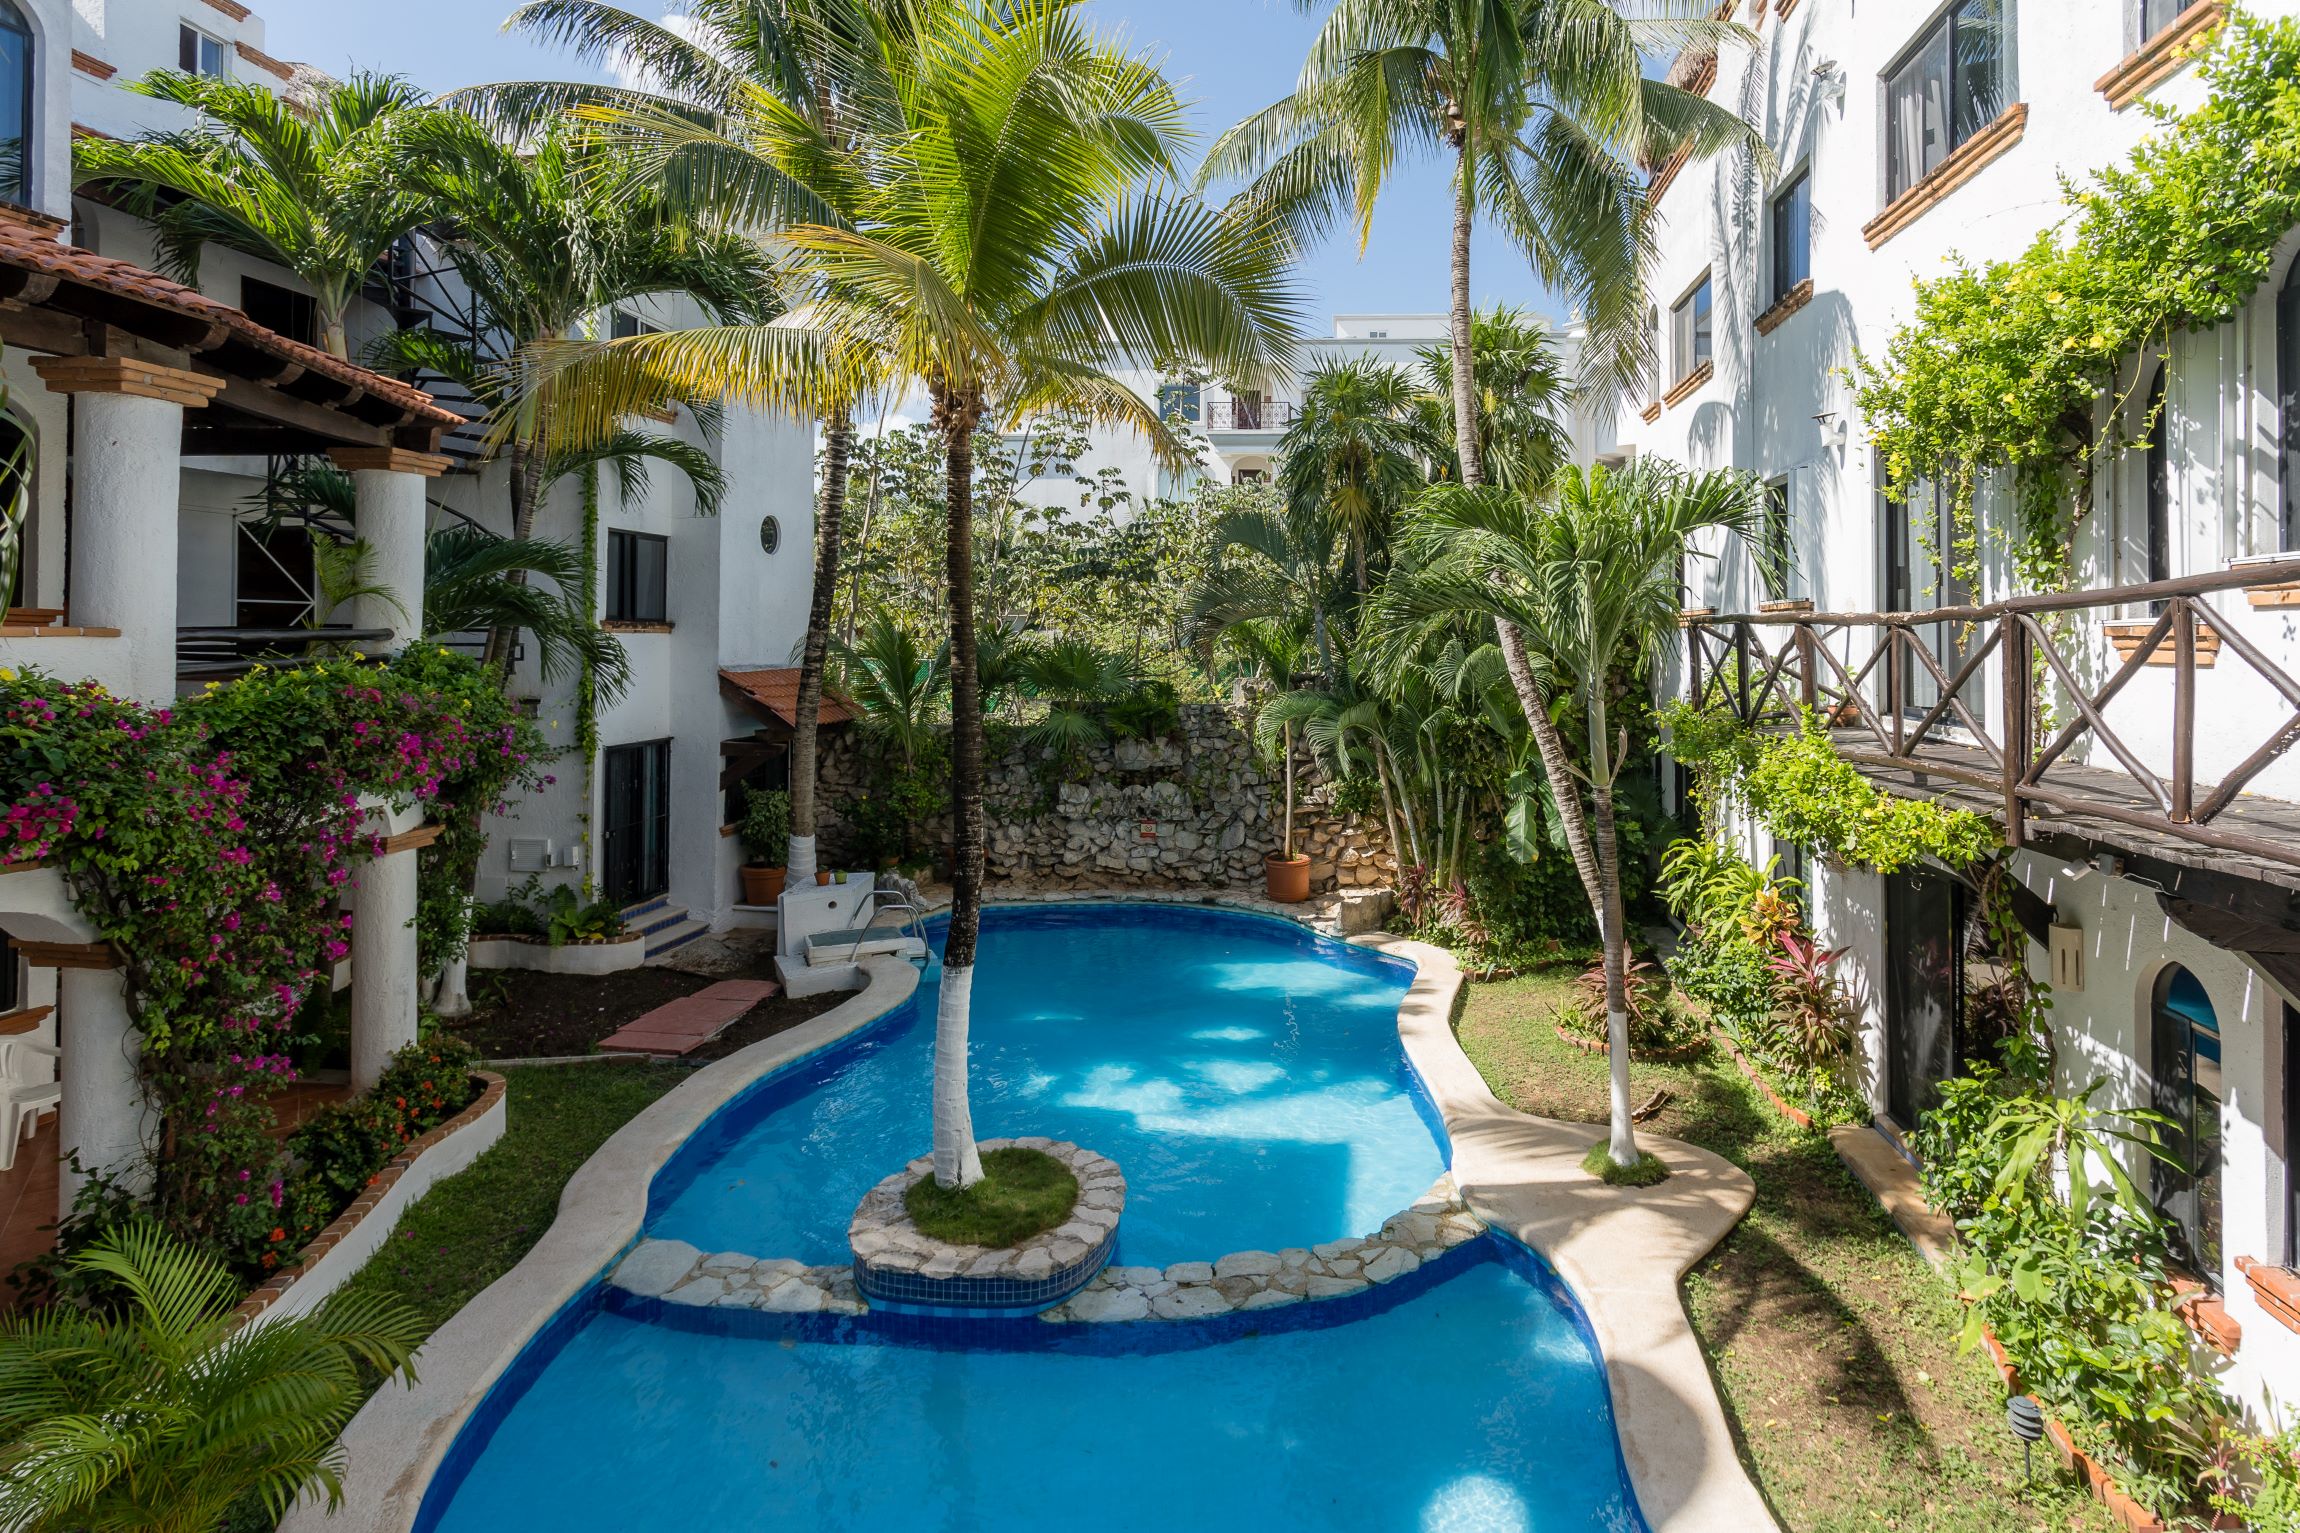 s apartments for sale in playa del carmen hacienda san josé common area pool